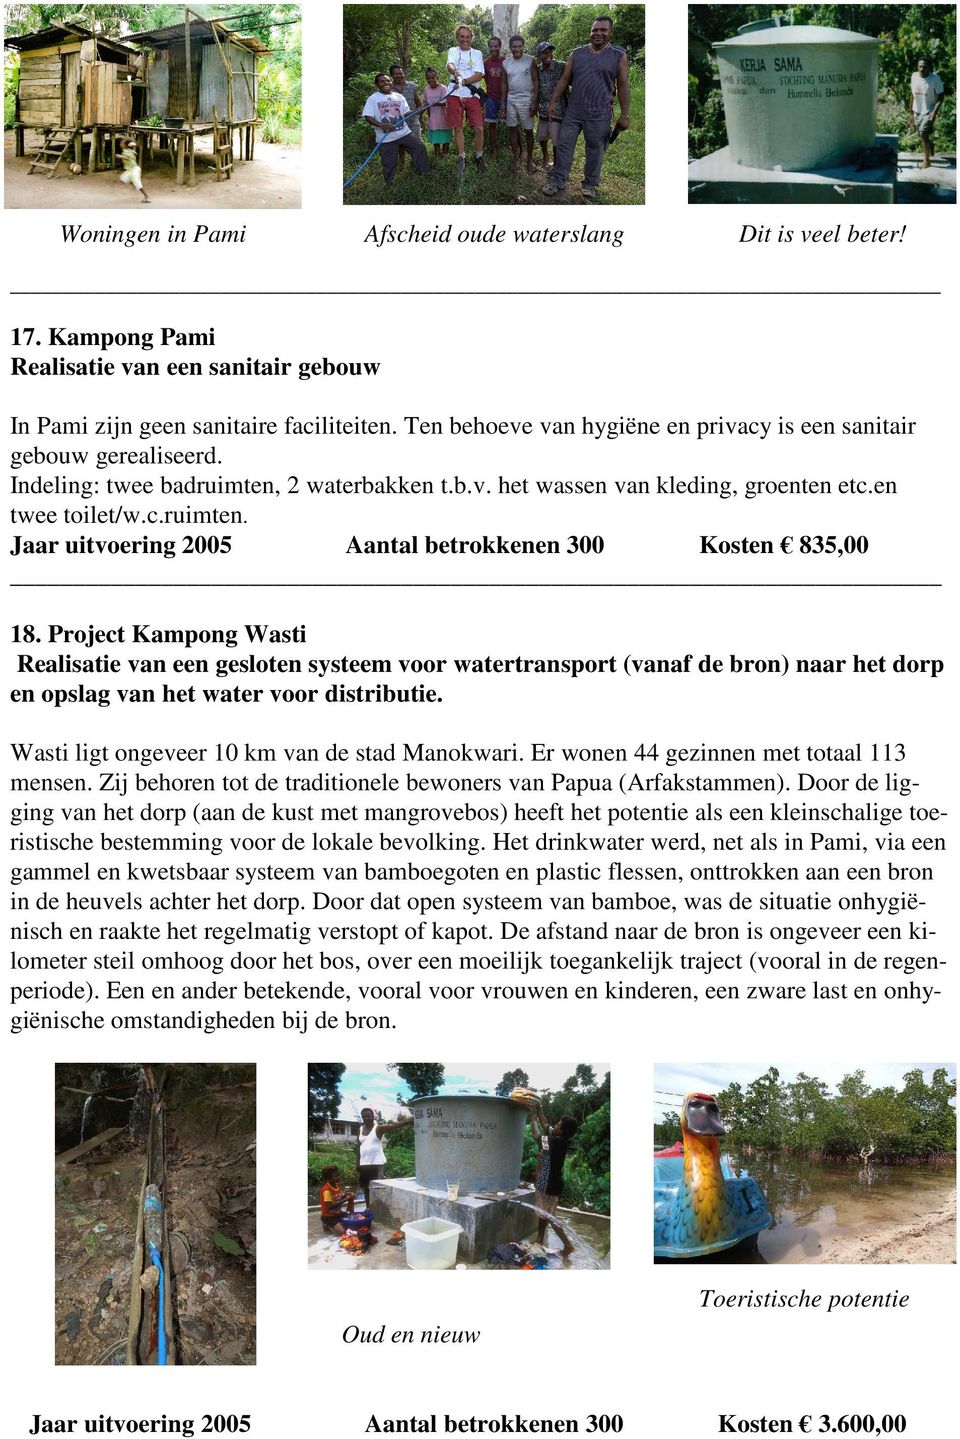 Project Kampong Wasti Realisatie van een gesloten systeem voor watertransport (vanaf de bron) naar het dorp en opslag van het water voor distributie. Wasti ligt ongeveer 10 km van de stad Manokwari.